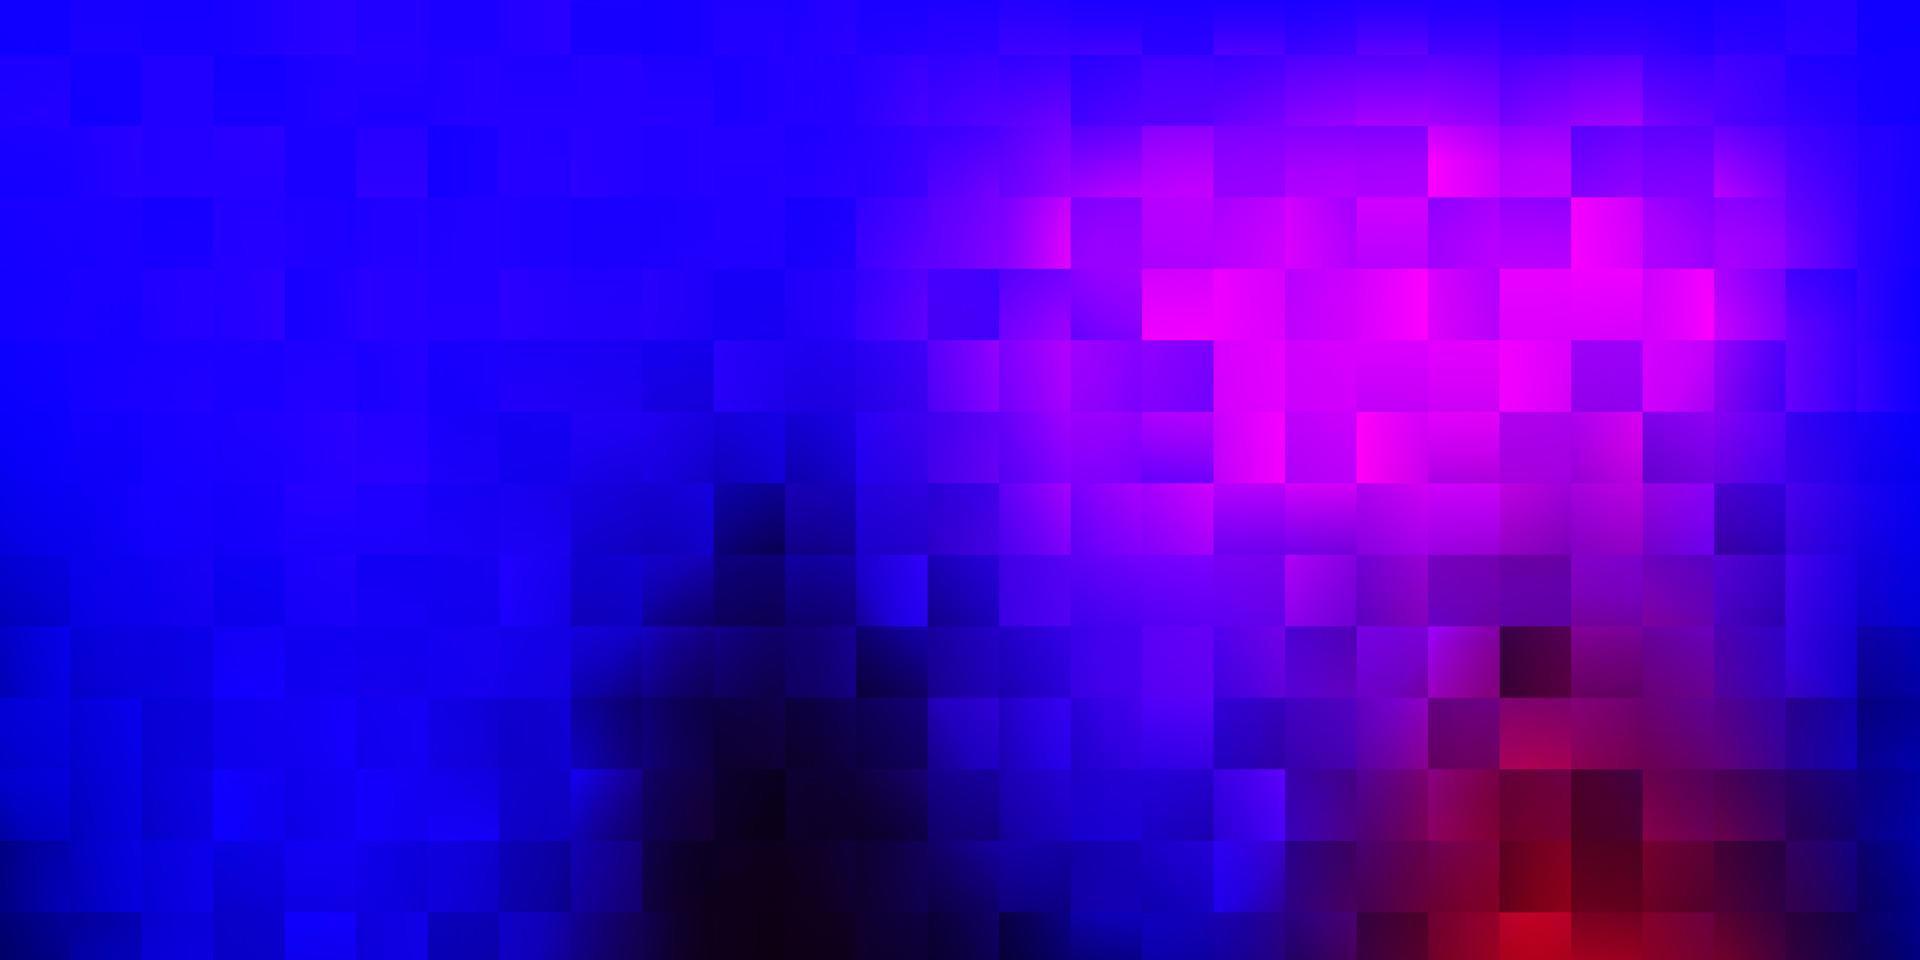 mörkblå, röd vektorbakgrund med rektanglar. vektor